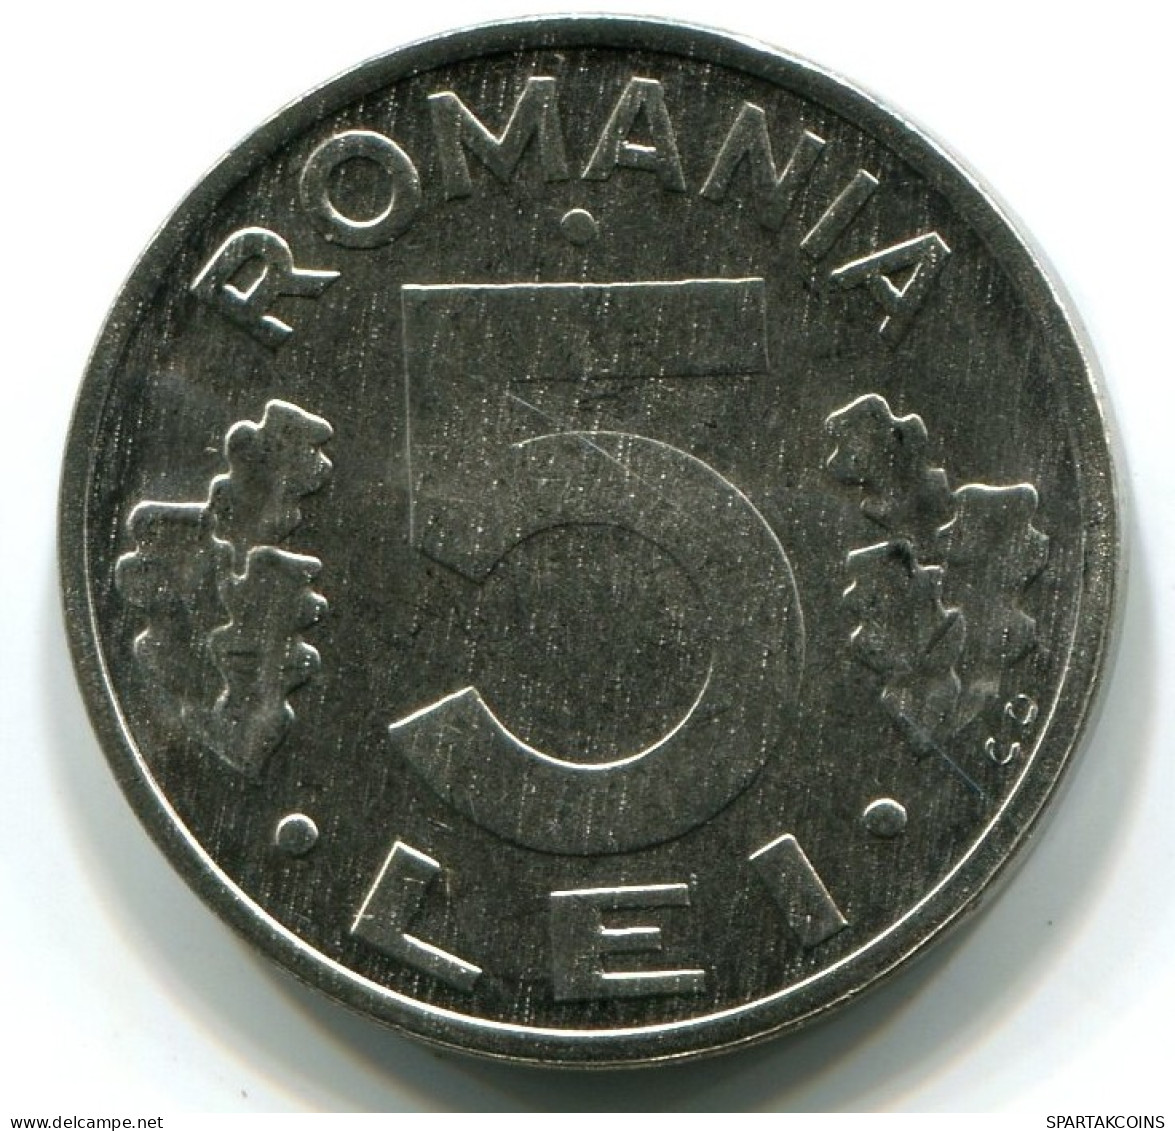 5 LEI 1992 RUMÄNIEN ROMANIA UNC Münze EAGLE COAT OF ARMS #W11207.D.A - Rumania